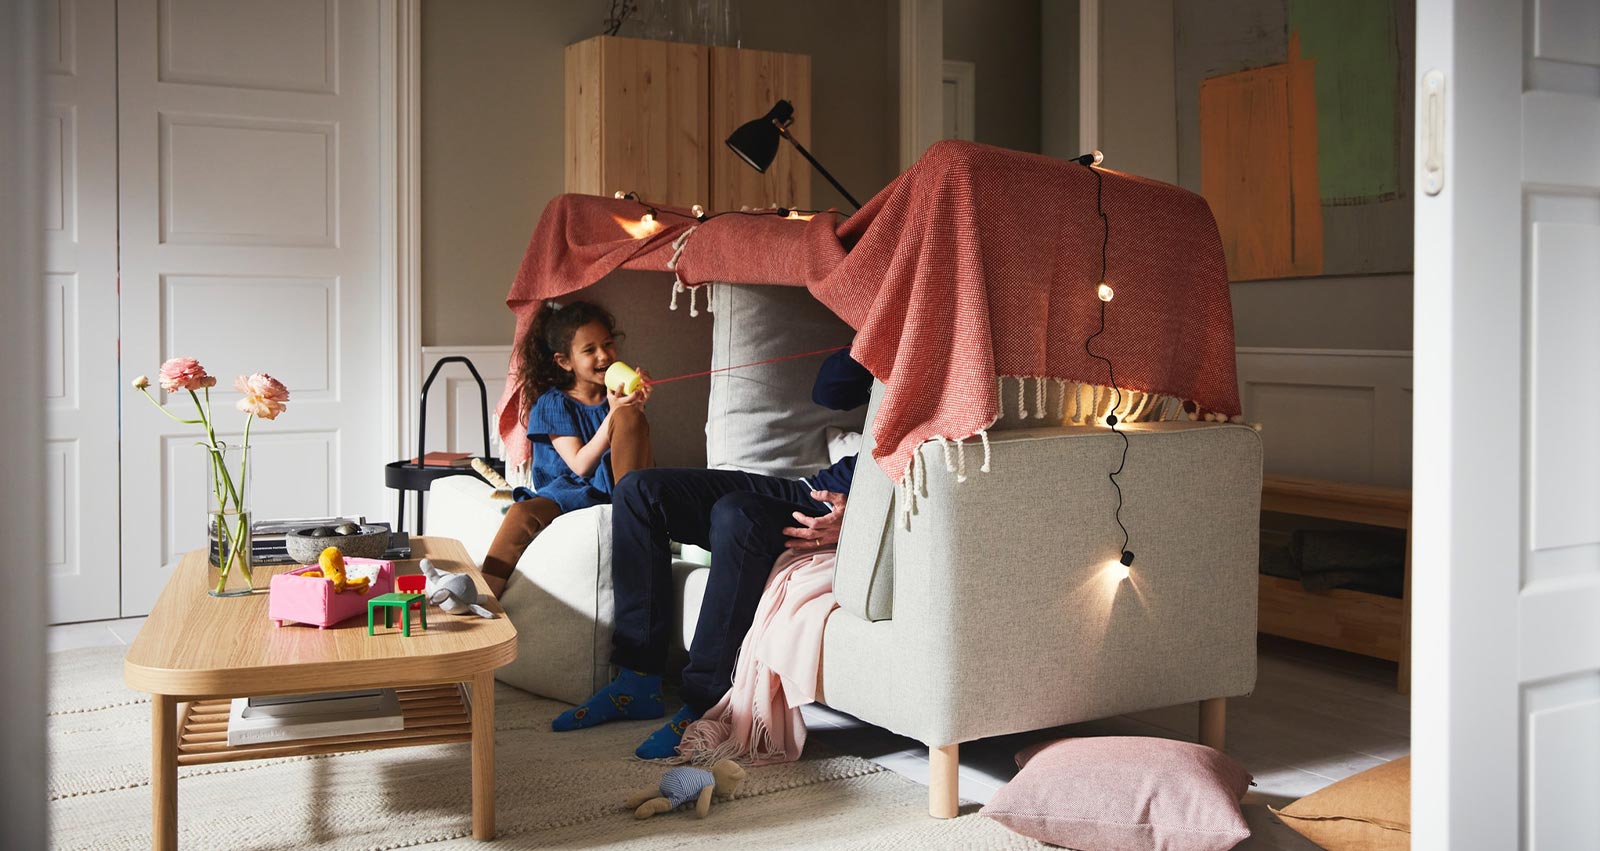 IKEA-battaniyeleri kullanarak oyun odasi olusturma fikrileri 01